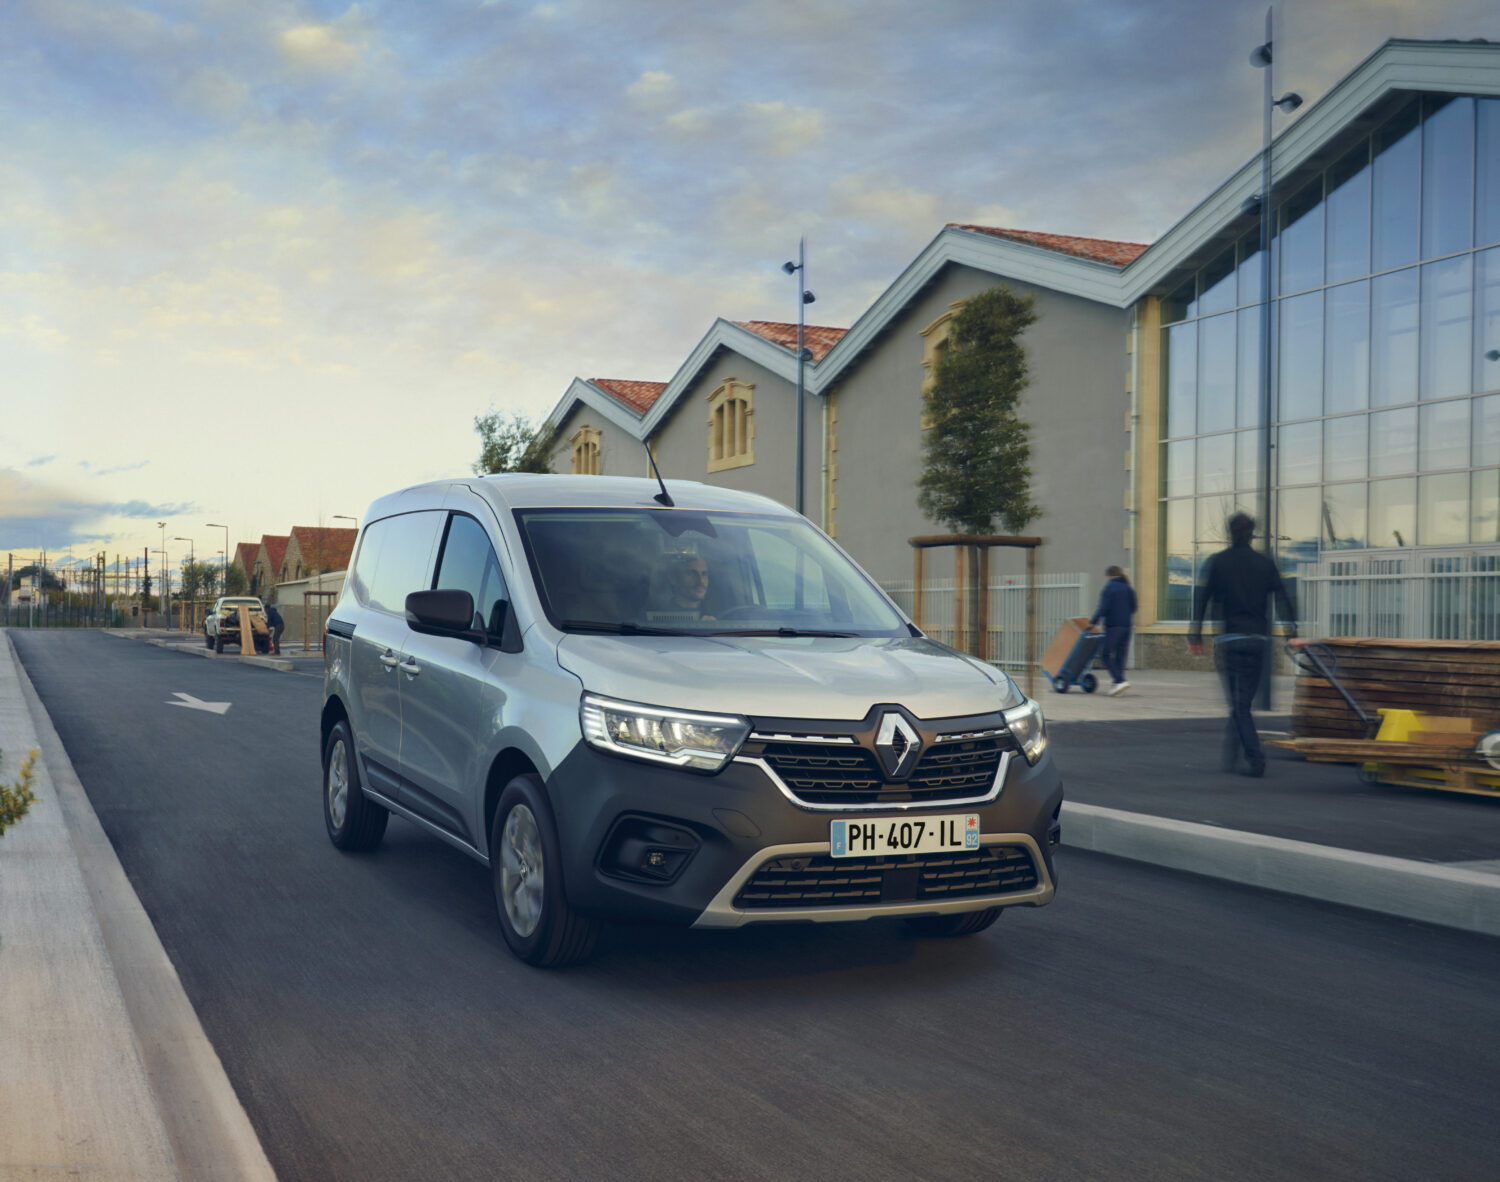 2021 - New Renault Kangoo Van on location.jpg